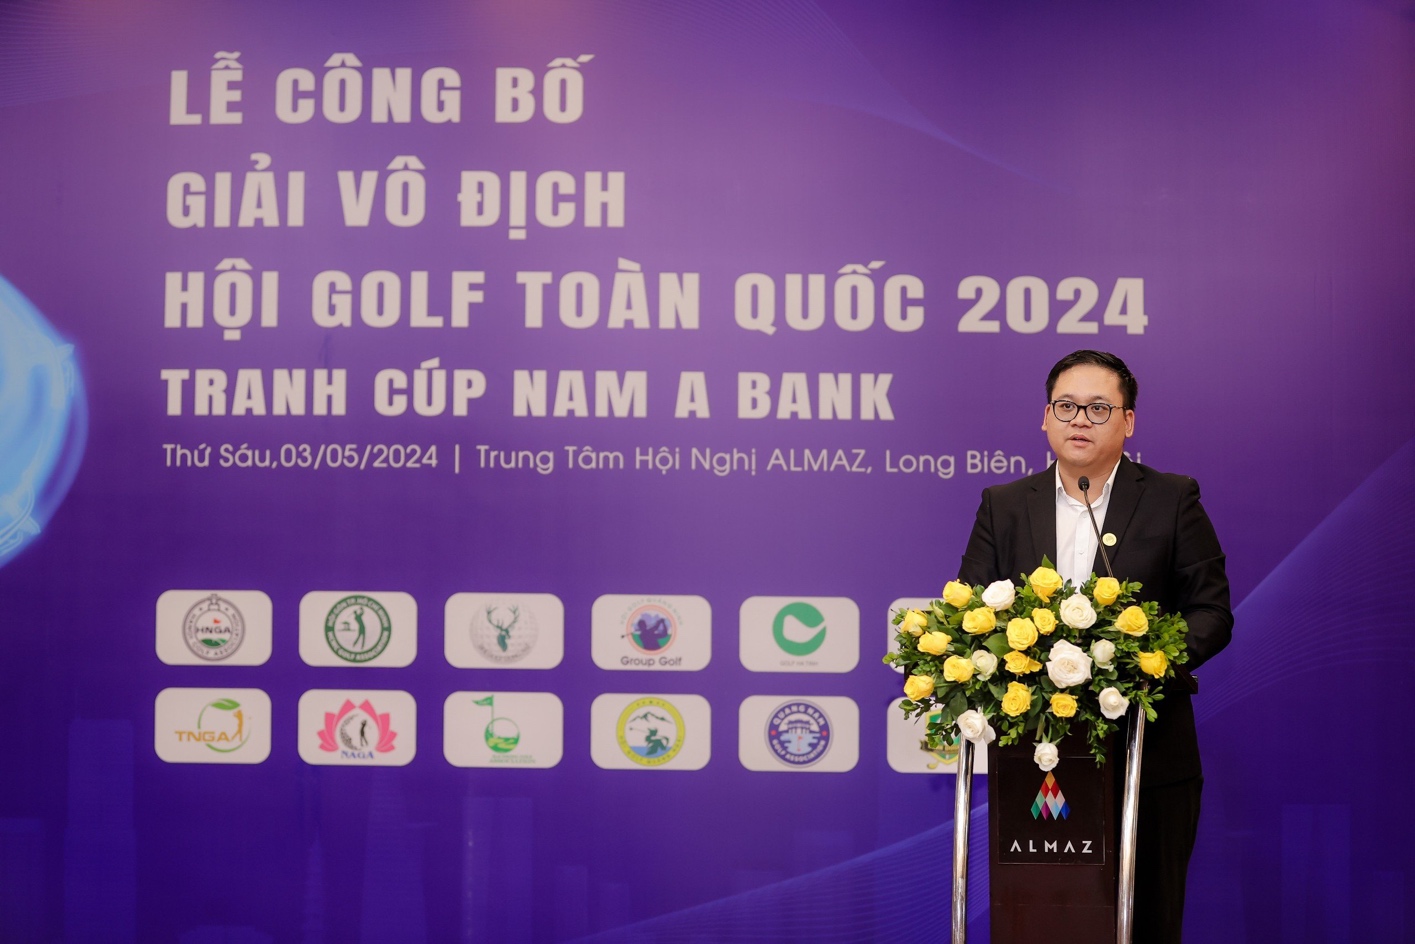 Giải vô địch các hội Golf toàn quốc 2024 – Tranh cúp Nam A Bank chính thức khởi tranh